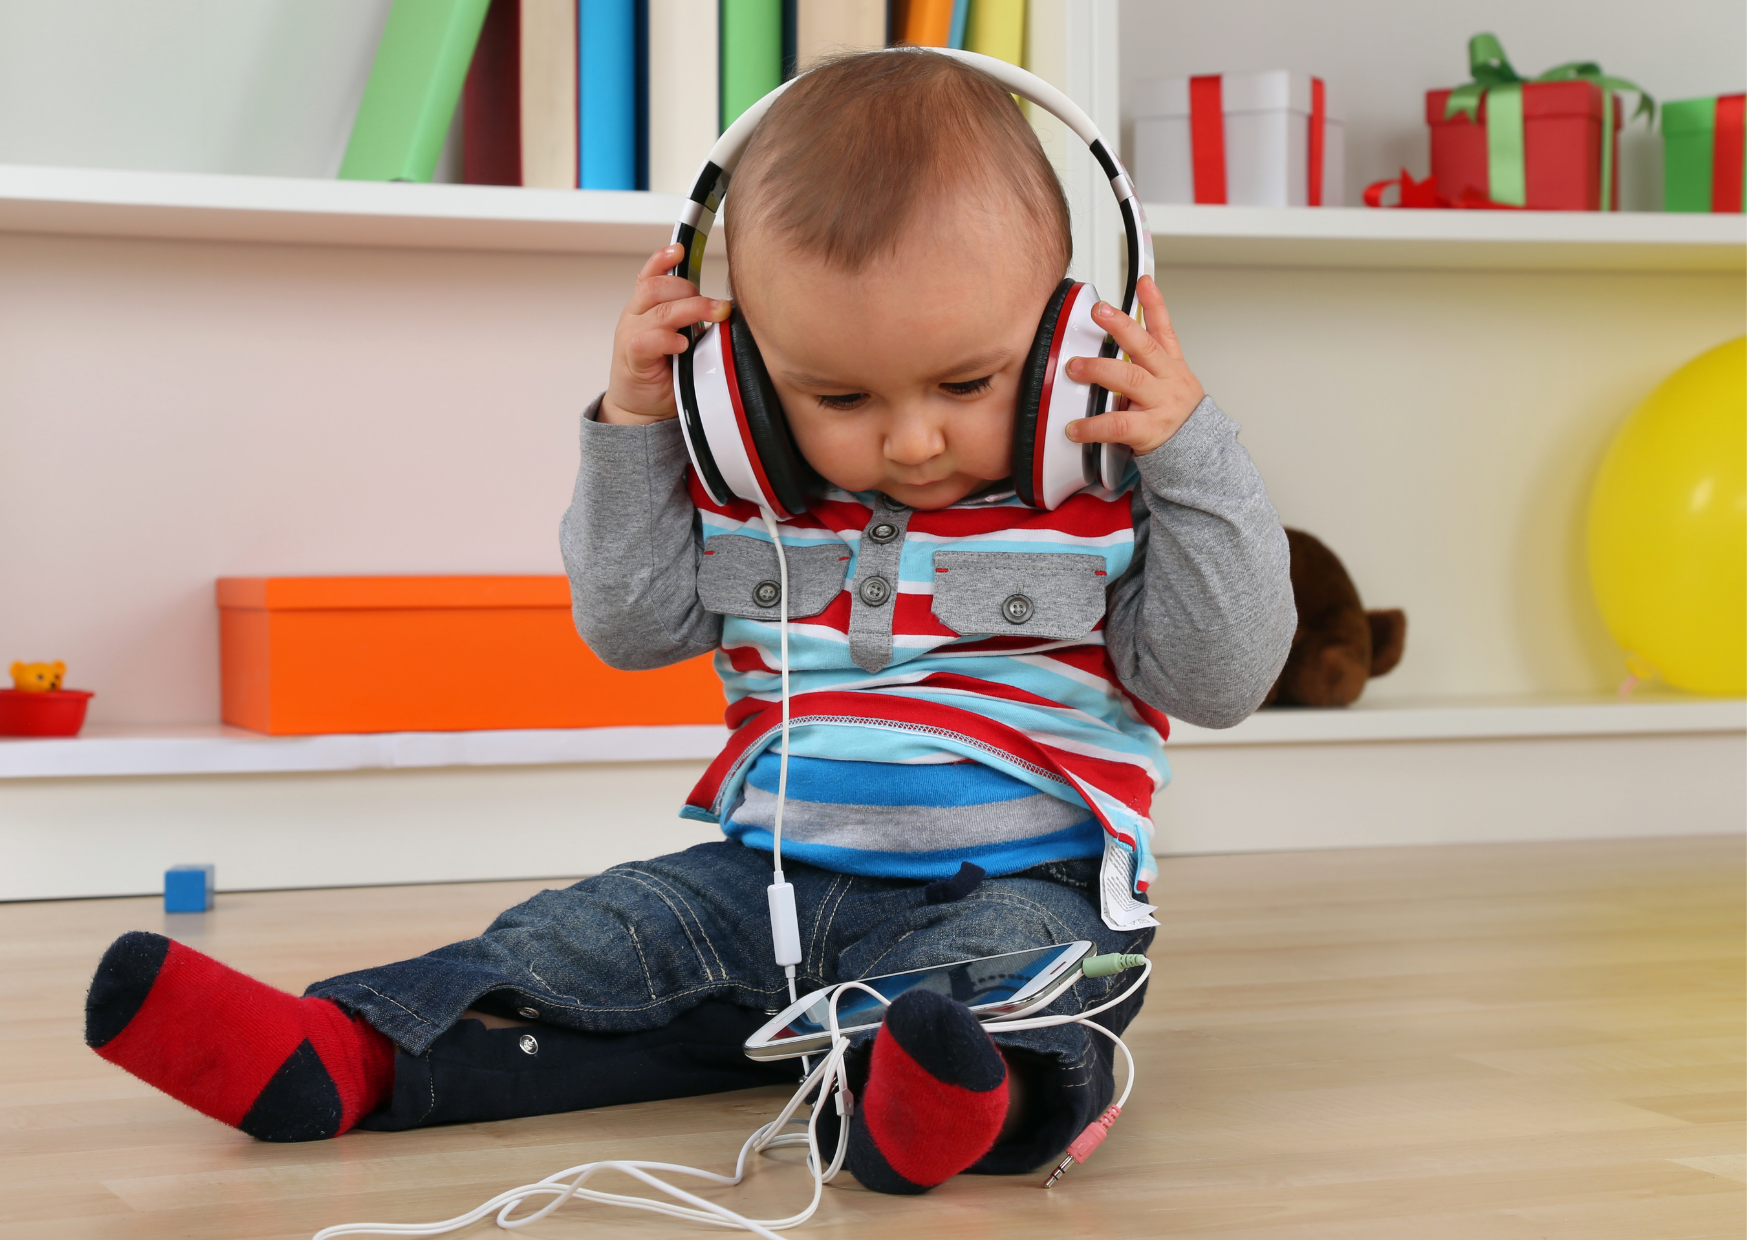 O que é e como é feita a avaliação audiológica infantil? - FONOTOM